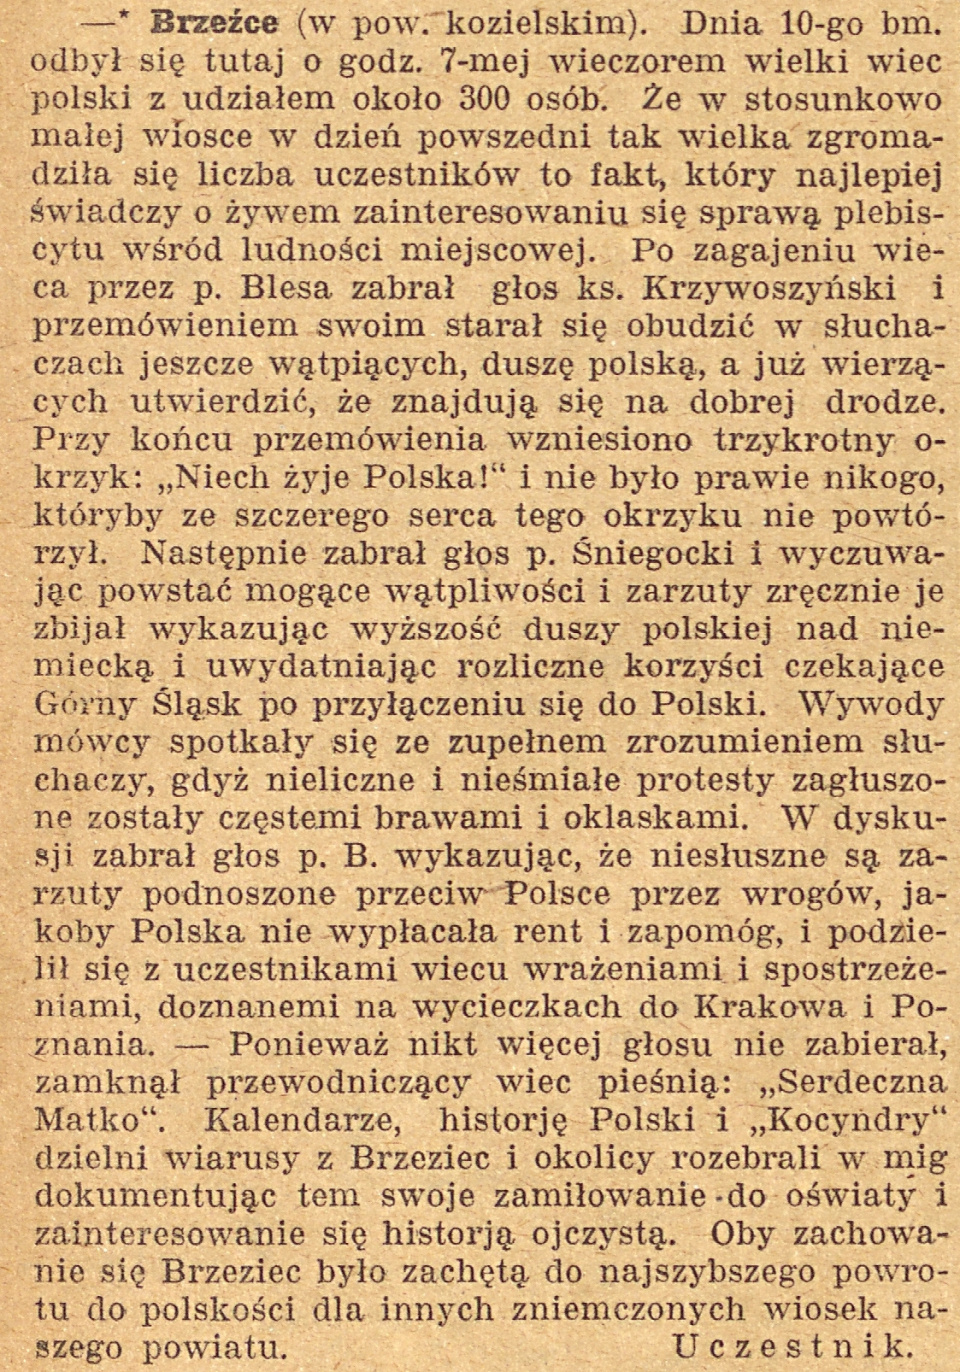 Brzeźce, Gazeta Opolska (16.11.1920)